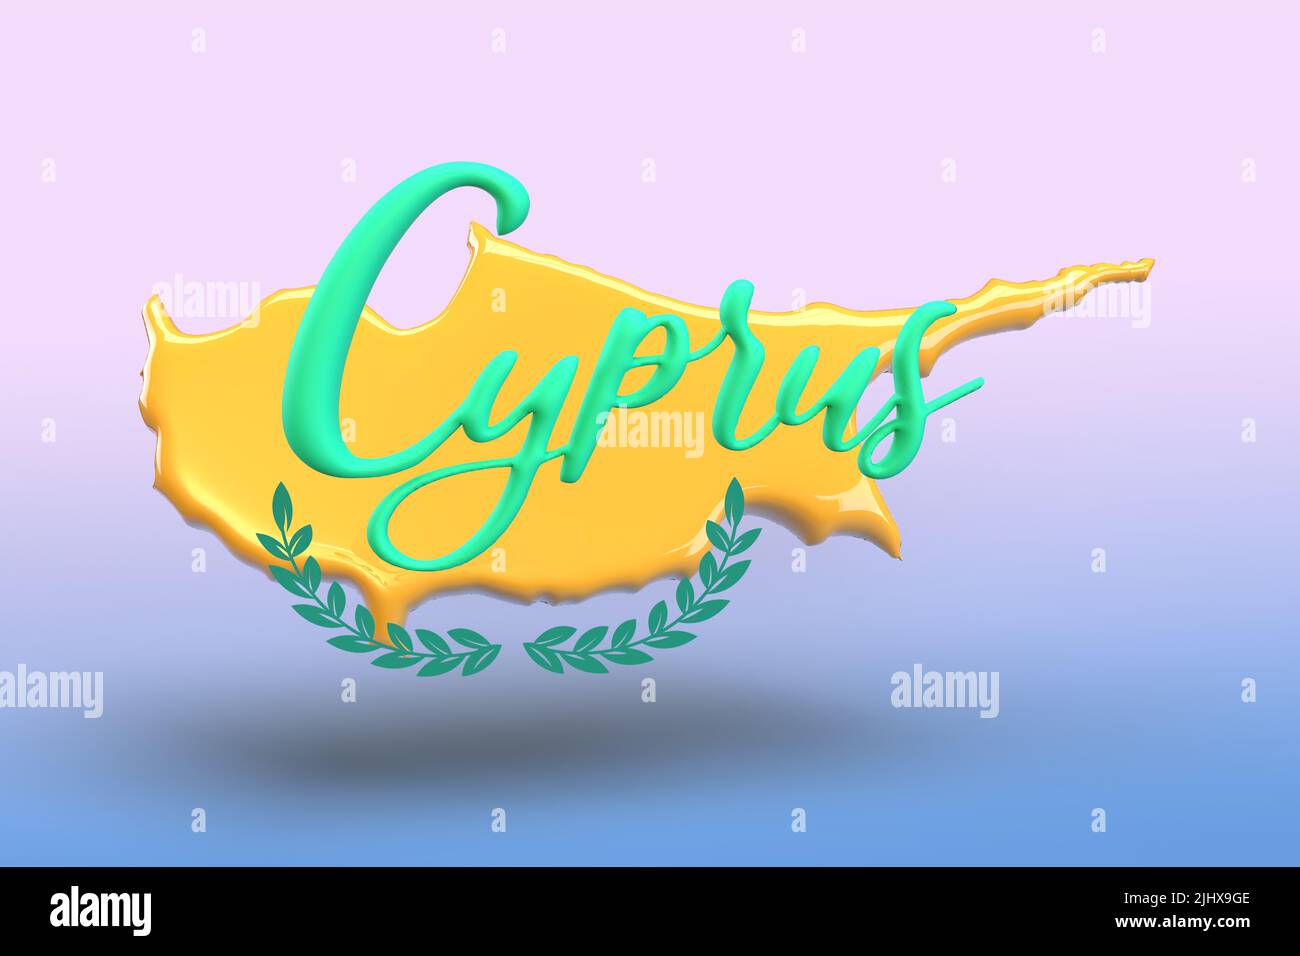 Chipre 3D Render, Mapa de Chipre en amarillo y verde. Foto de stock